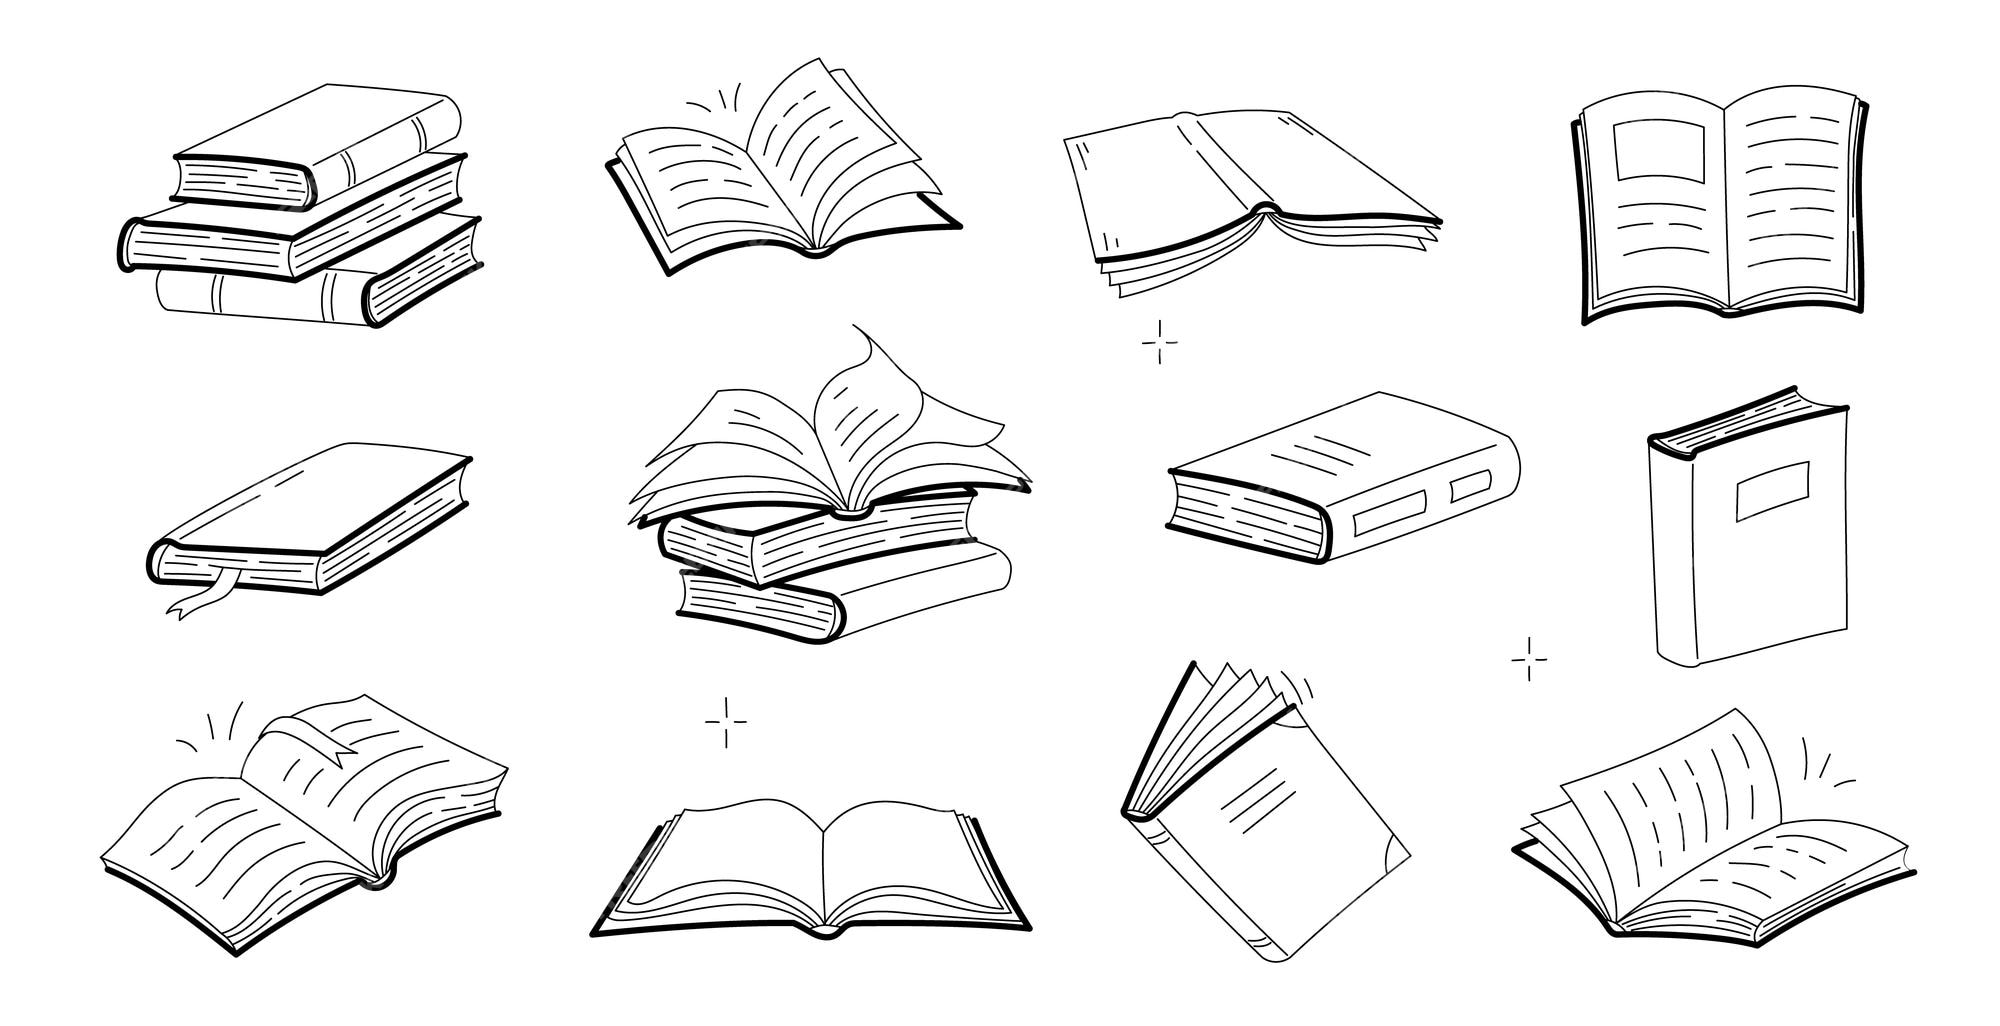 Vectores e ilustraciones de Literatura para descargar gratis | Freepik